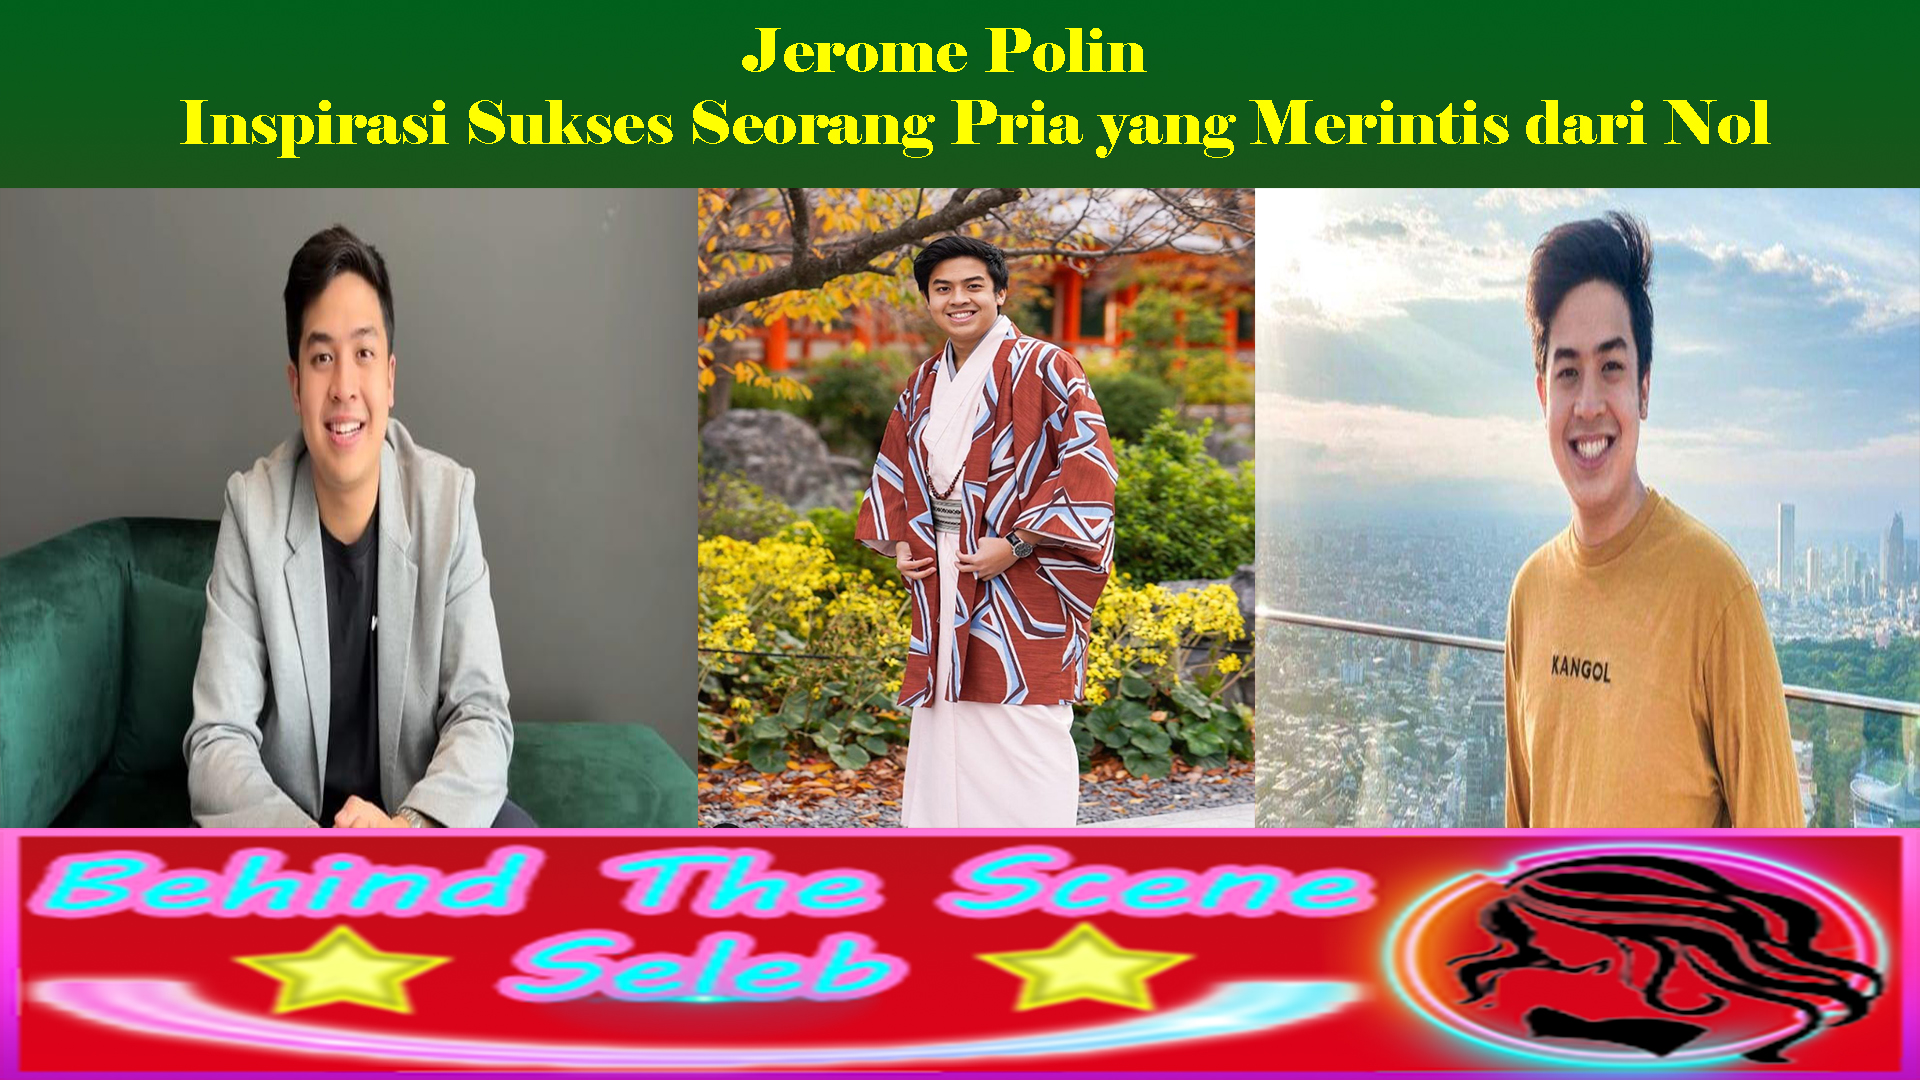 Jerome Polin: Inspirasi Sukses Seorang Pria yang Merintis dari Nol